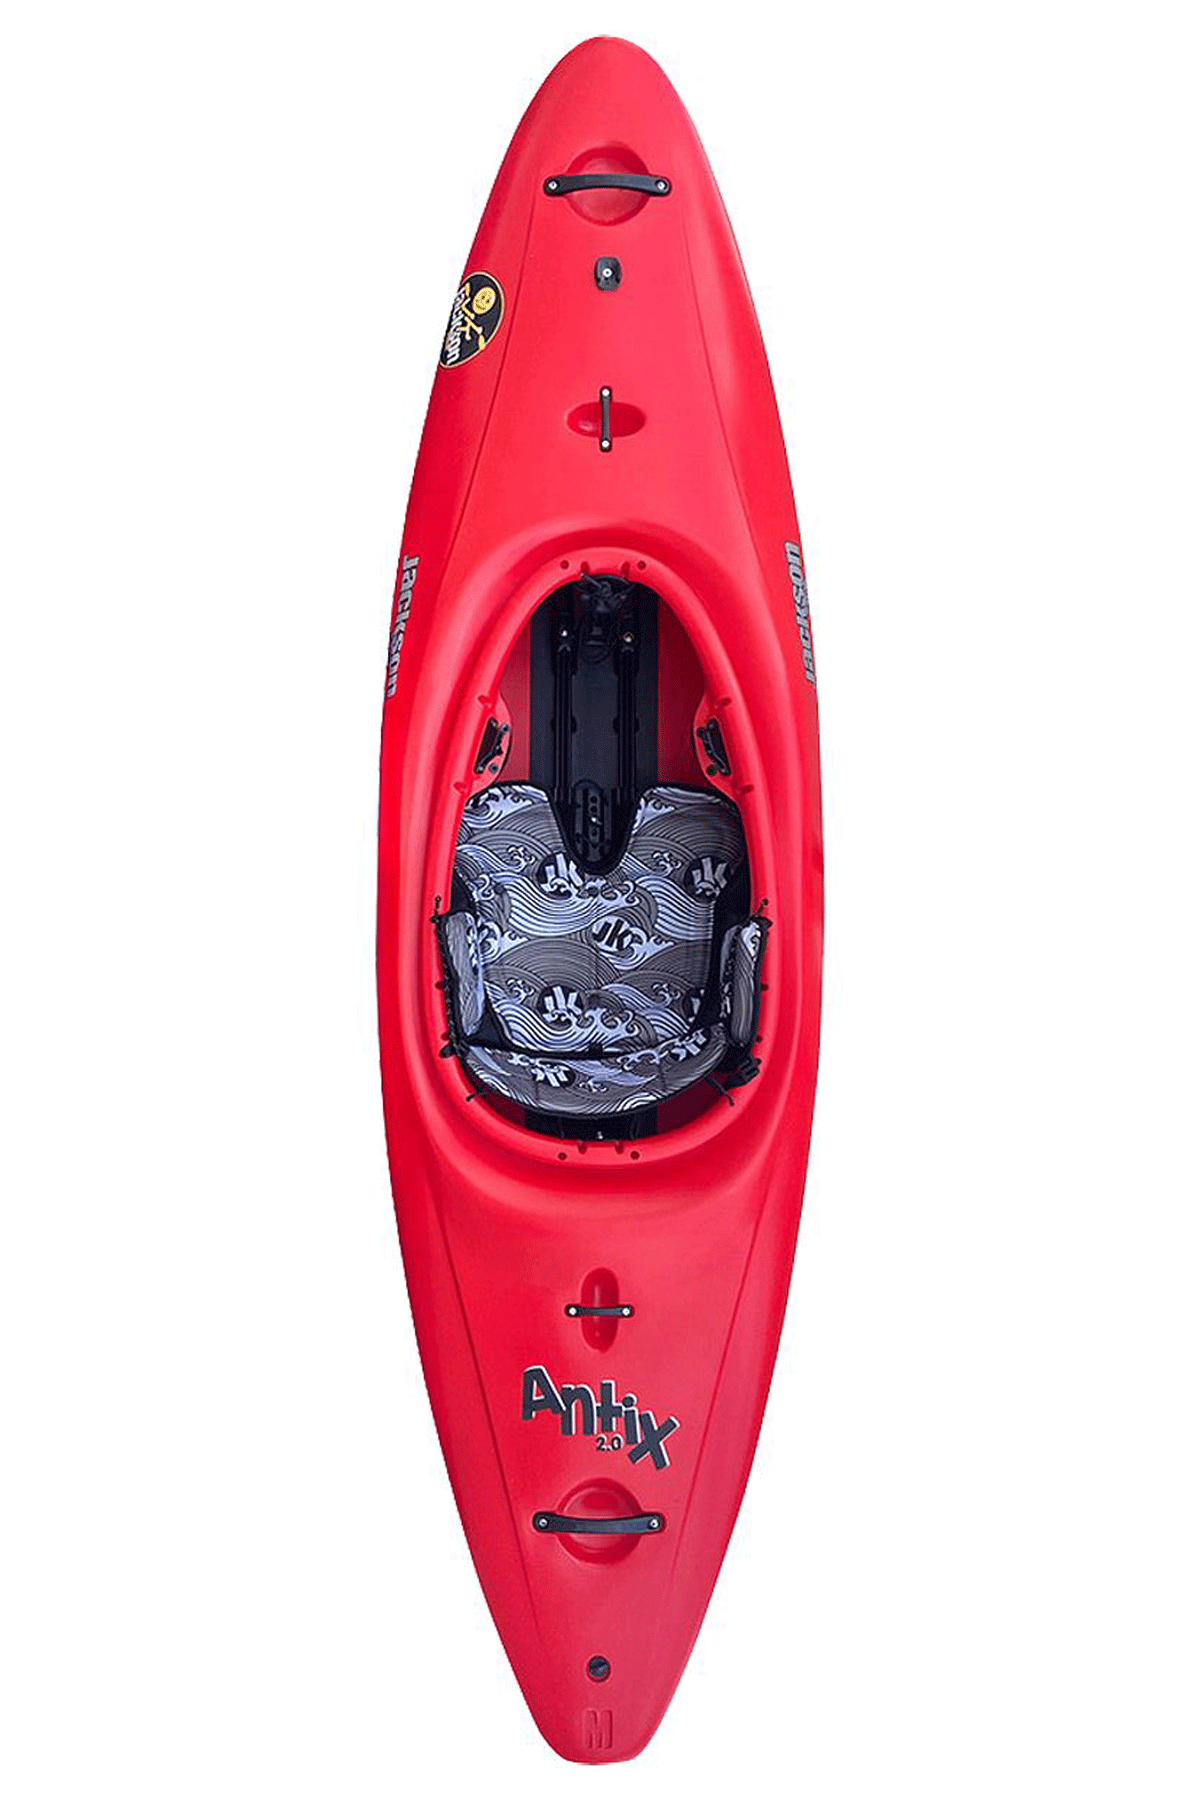 Jackson Antix 2.0 Whitewater Kayak Red